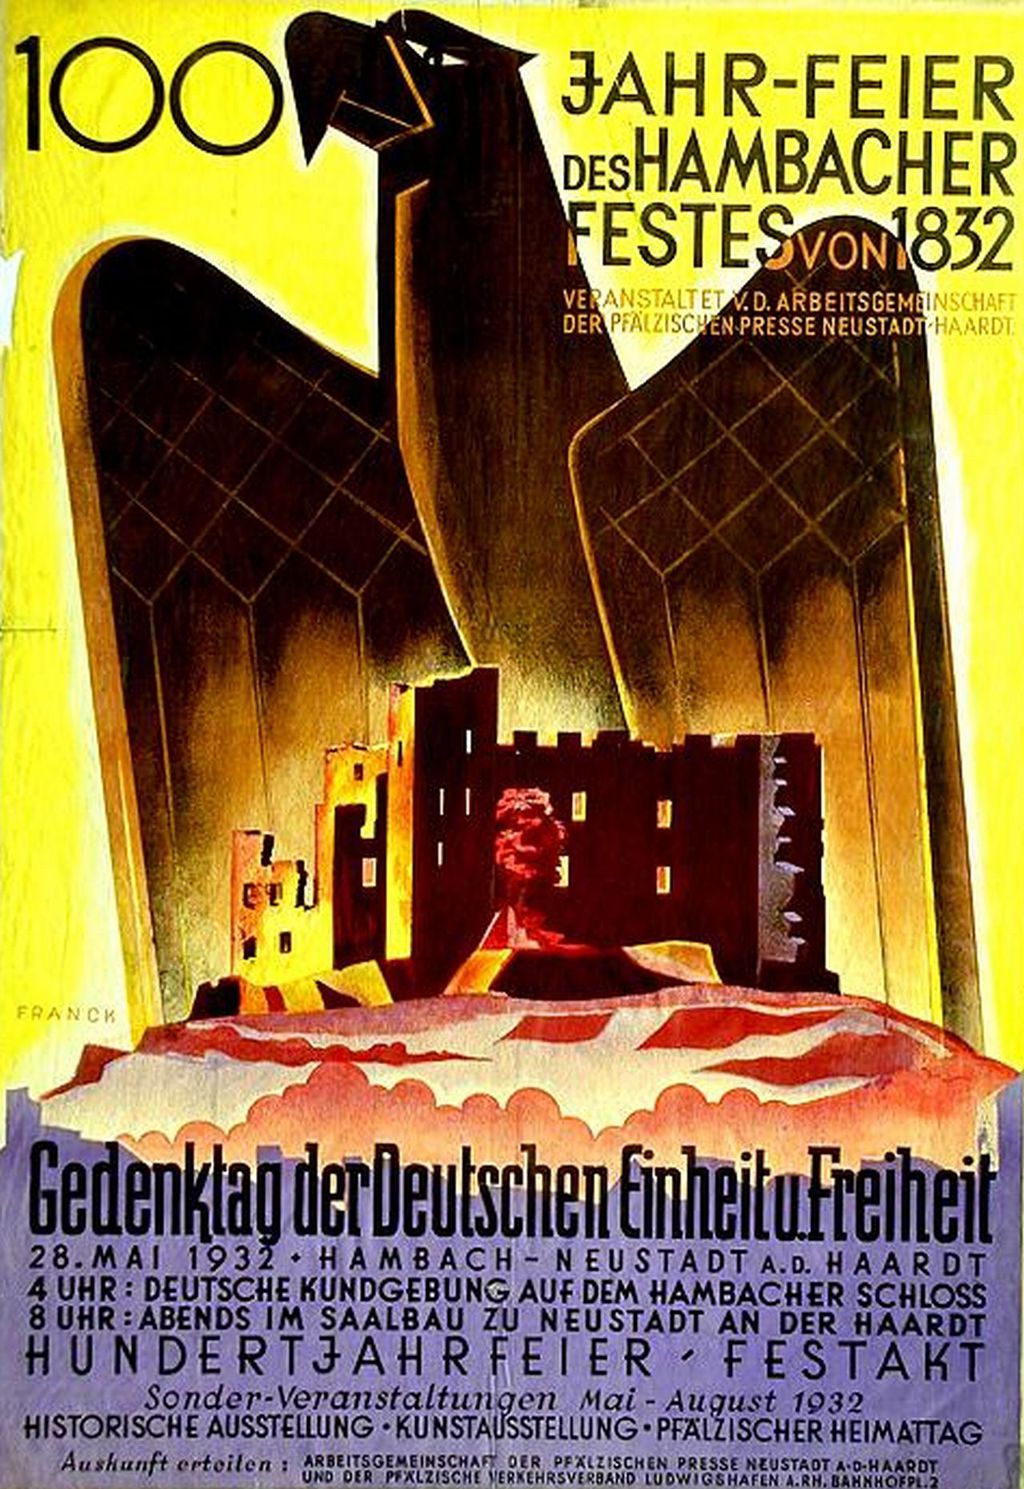 Plakat zur 100-Jahrfeier des Hambacher Festes, 1932